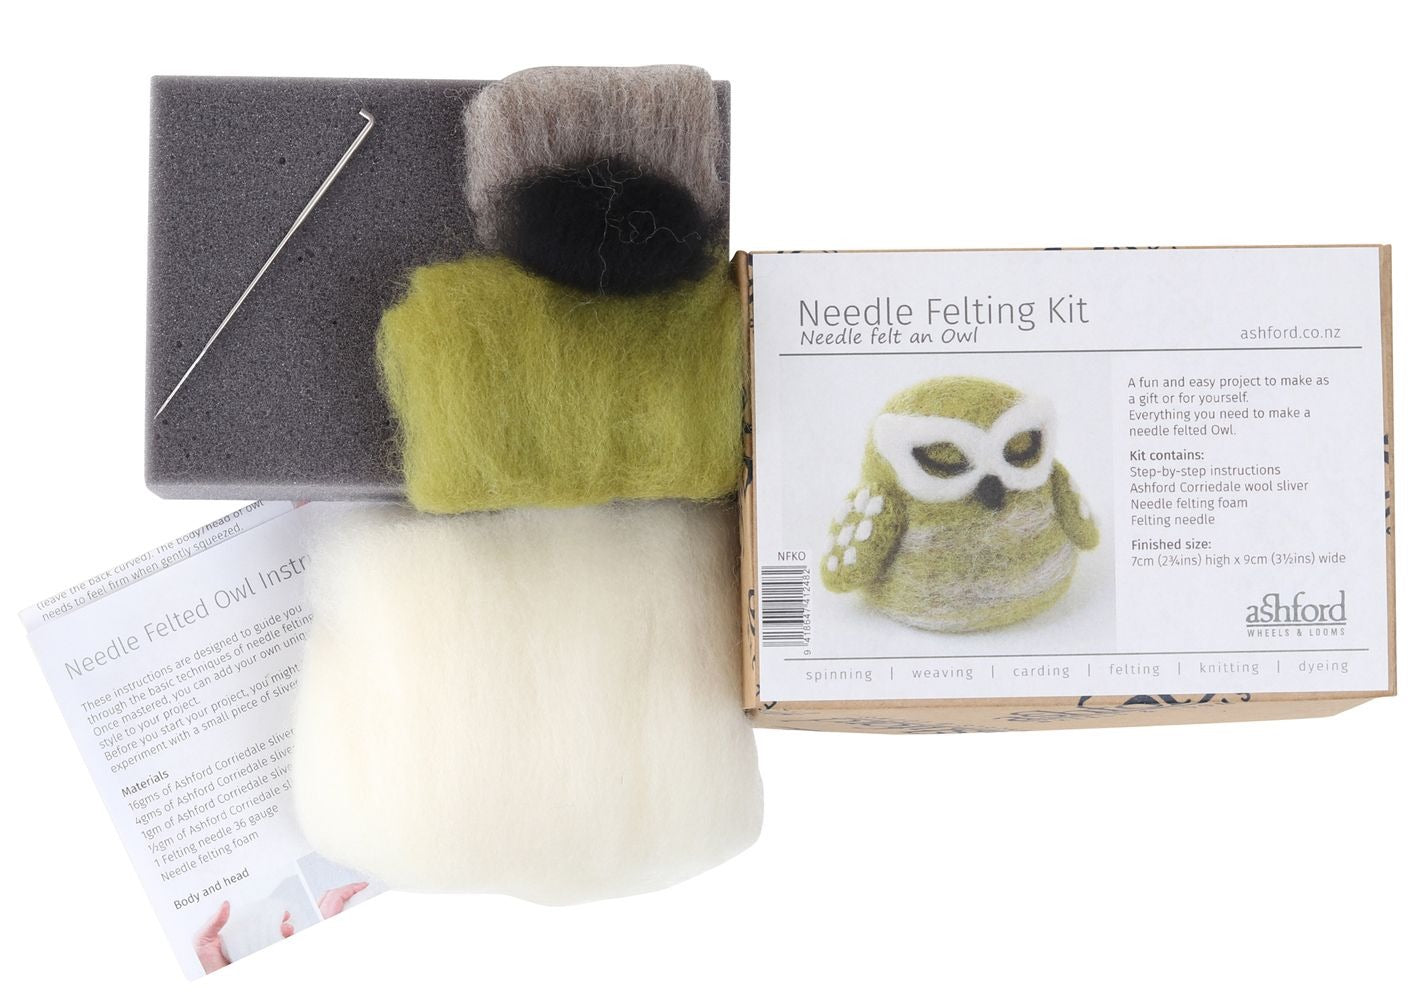 Needle Felting Kit - Owl